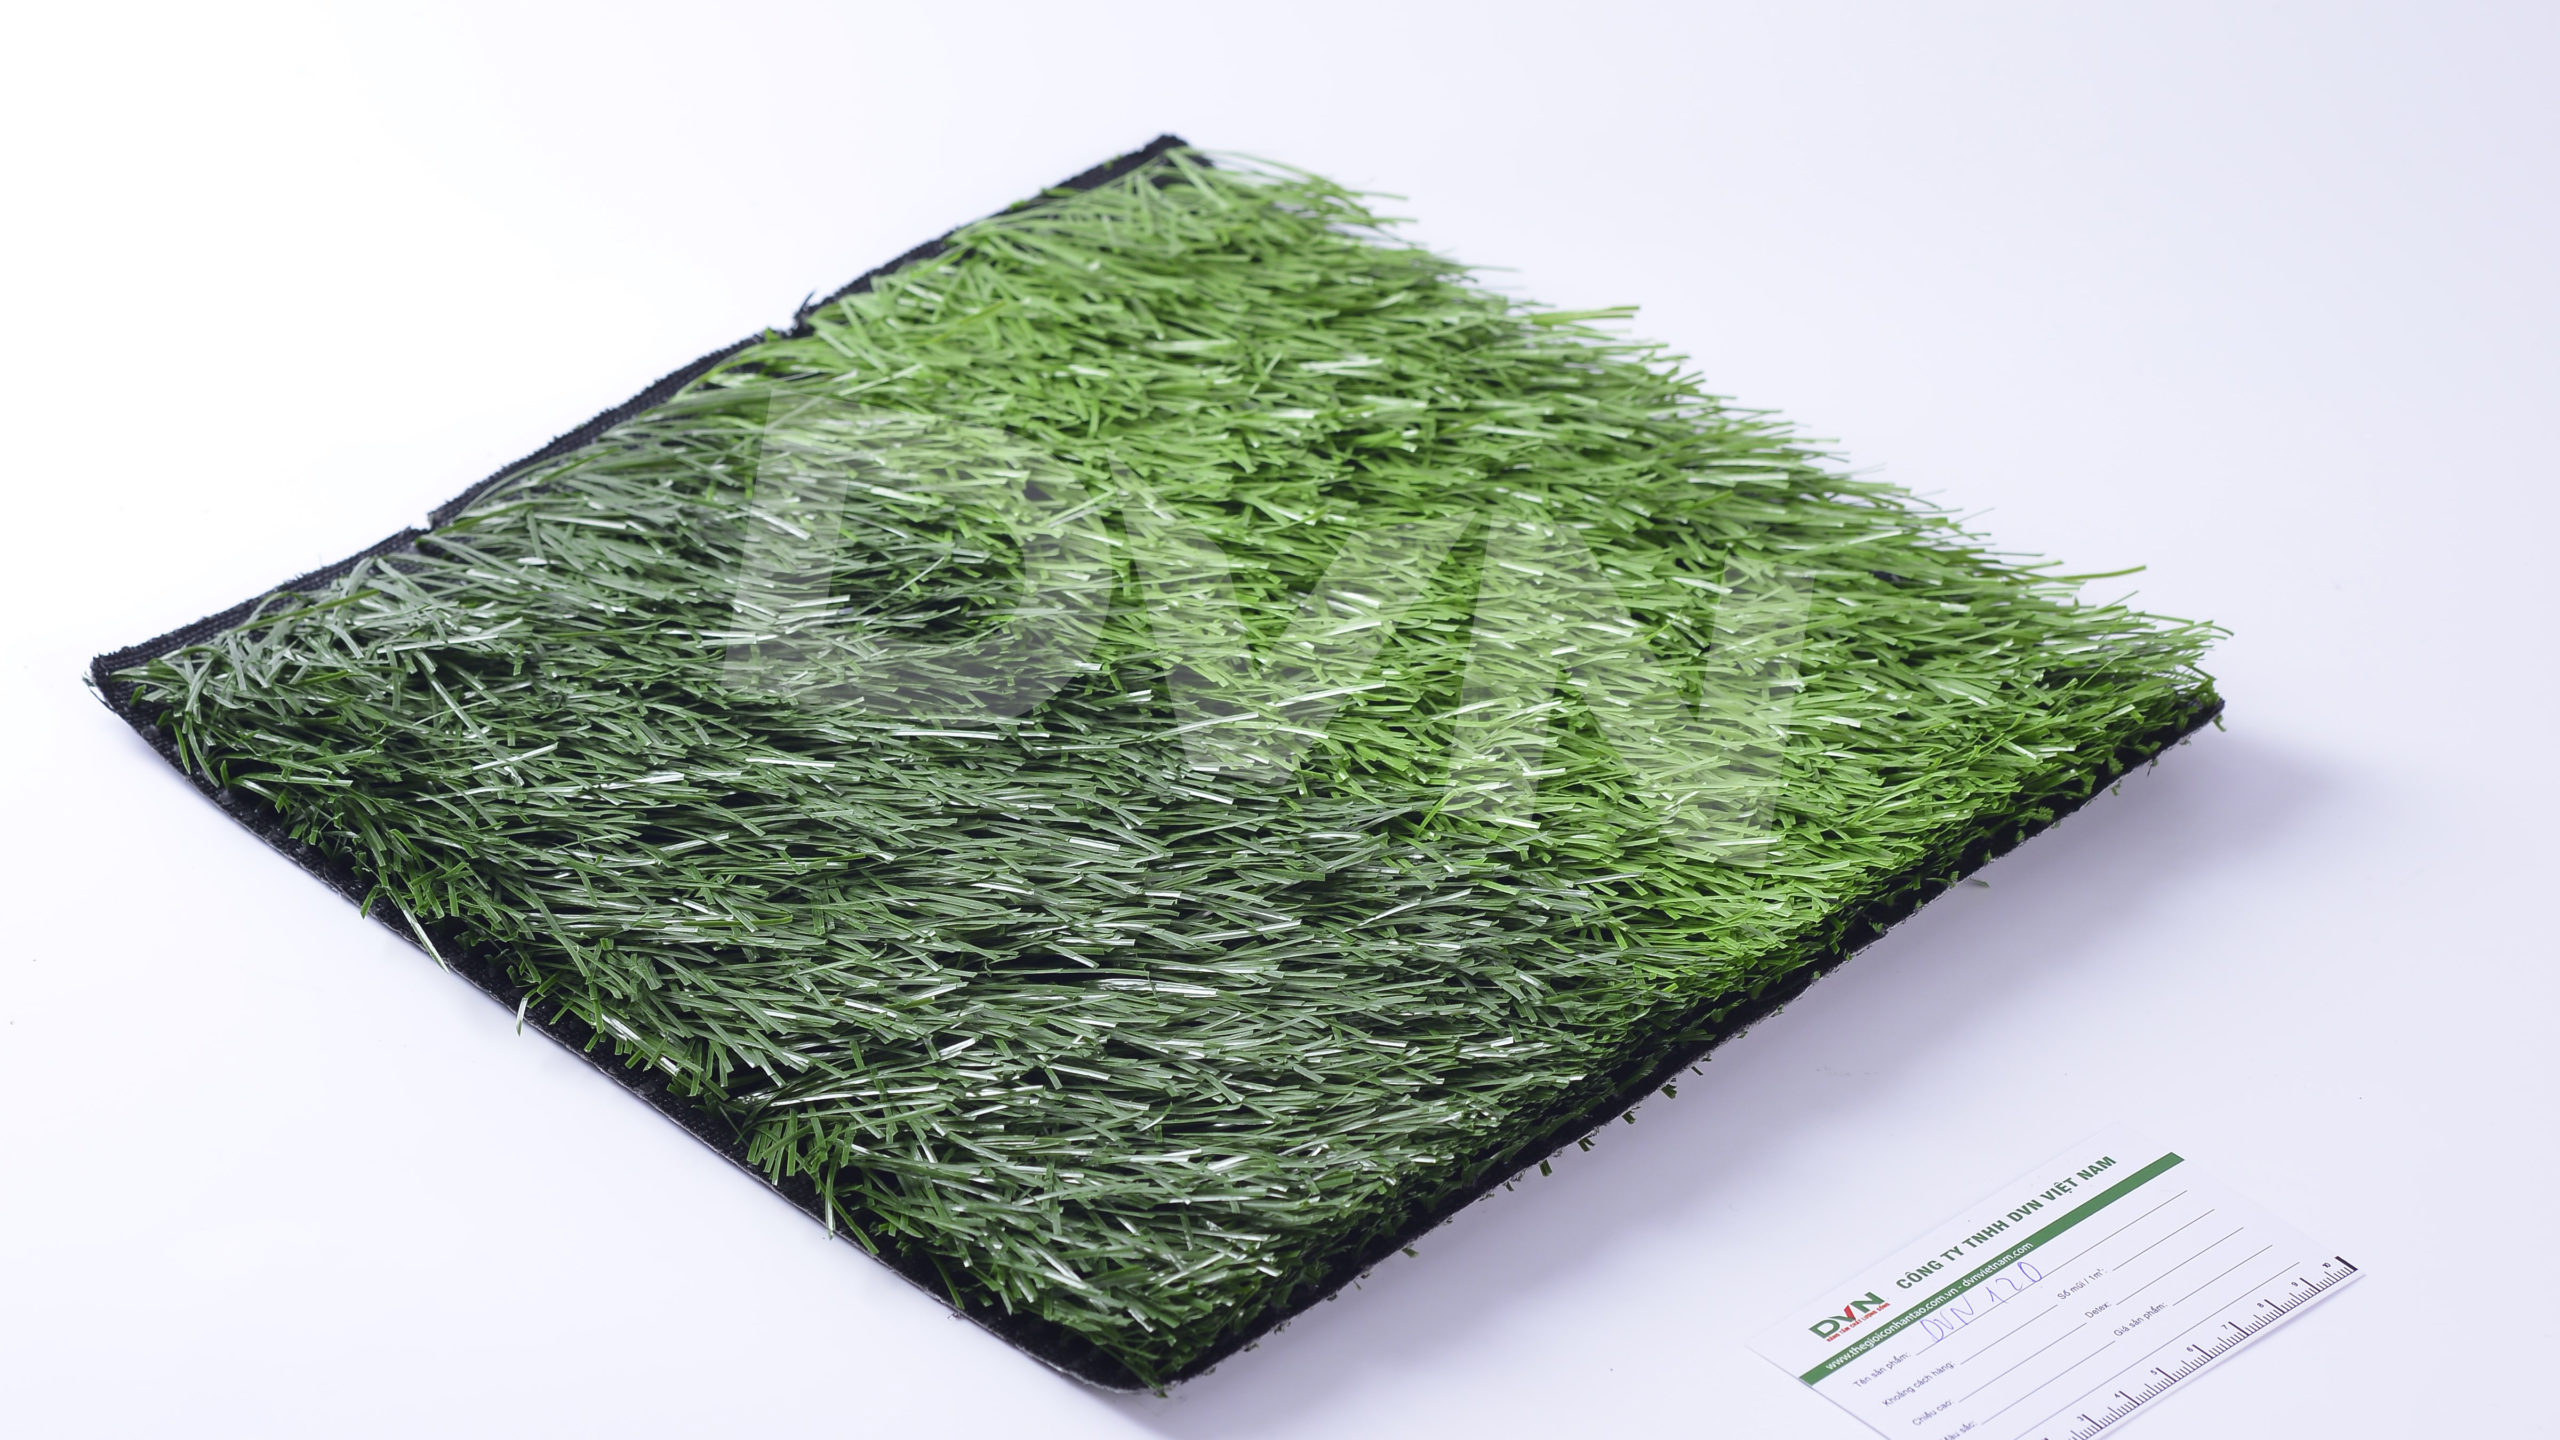 2. Đánh giá về độ bền của cỏ nhân tạo 2